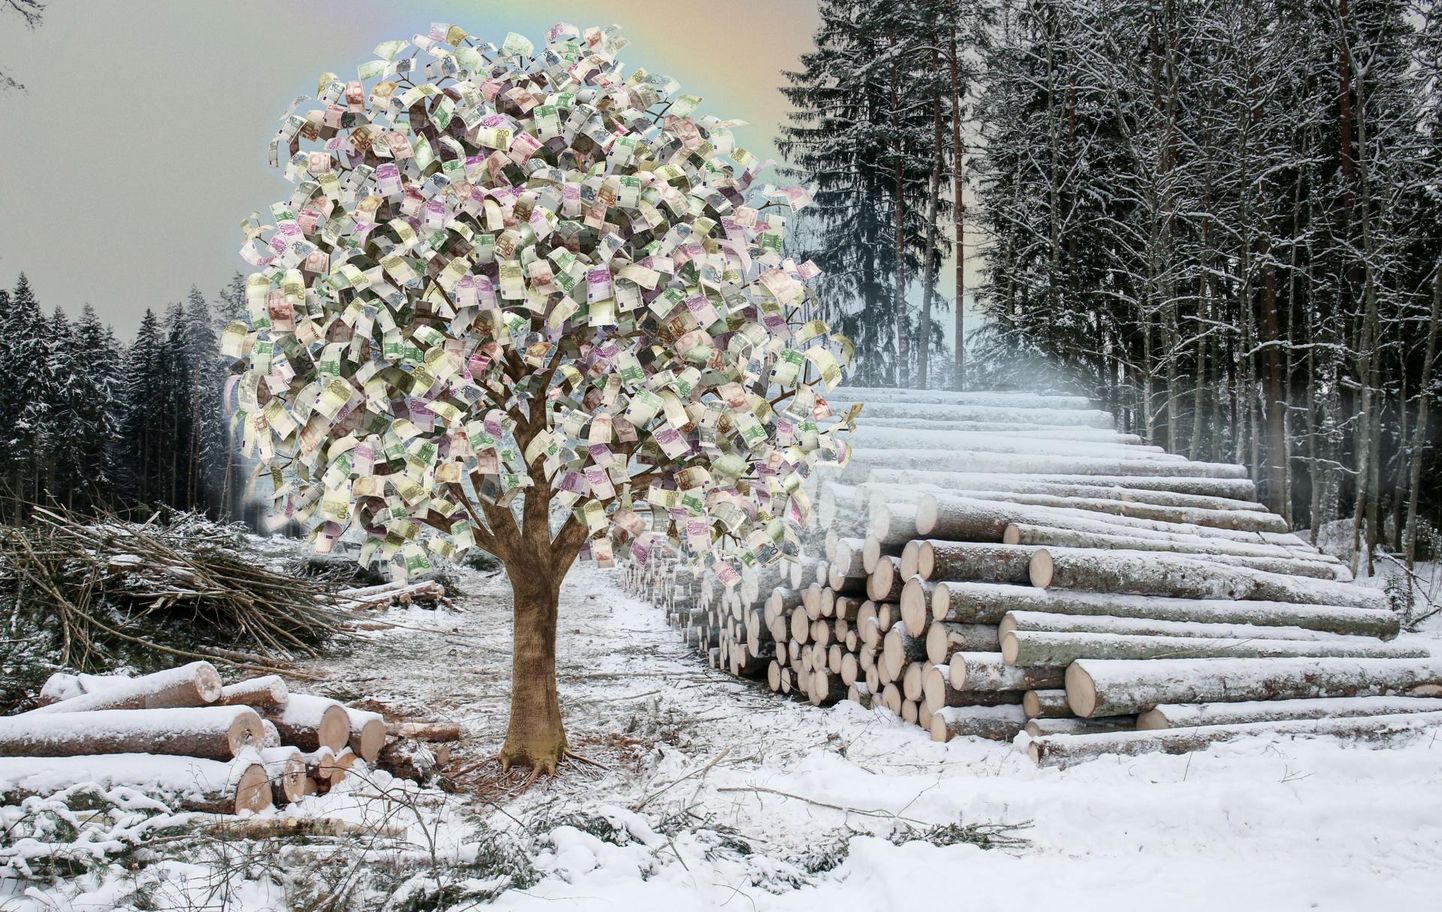 В позапрошлом году все были потрясены новостью о том, что Эстонию могут оштрафовать. Однако новые расчеты обещают прибыль. Фото: коллаж, на котором изображено денежное дерево.